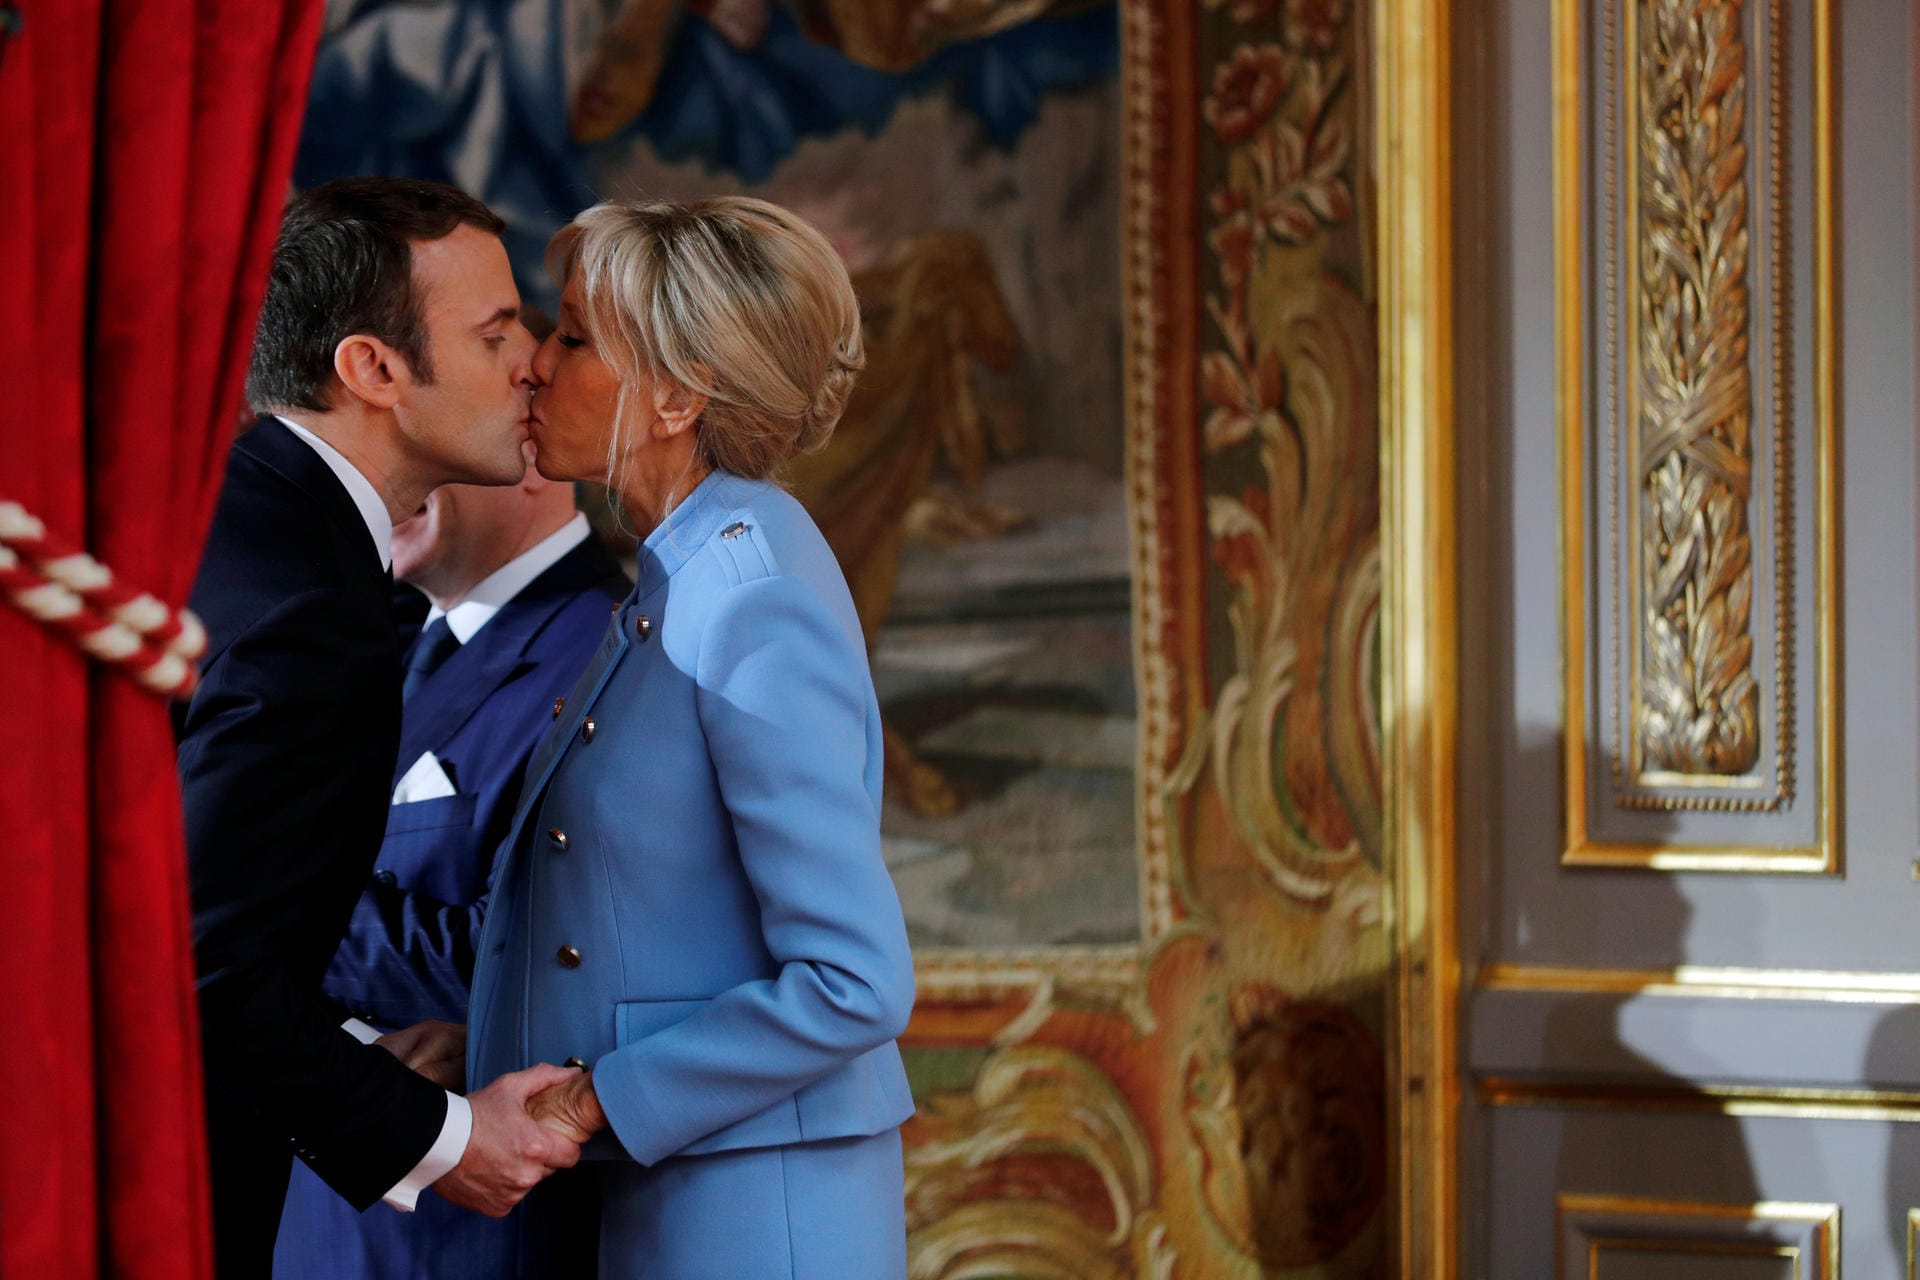 Macron küsst seine Frau Brigitte Trogneux während seiner Amtseintritt-Zeremonie: Er ist 39 – sie 64. Sie war seine frühere Französisch Lehrerin, mit 17 habe er sich in sie verliebt. Eine ungewöhnliche Liebesgeschichte erobert vor einem Jahr weltweit die Schlagzeilen.